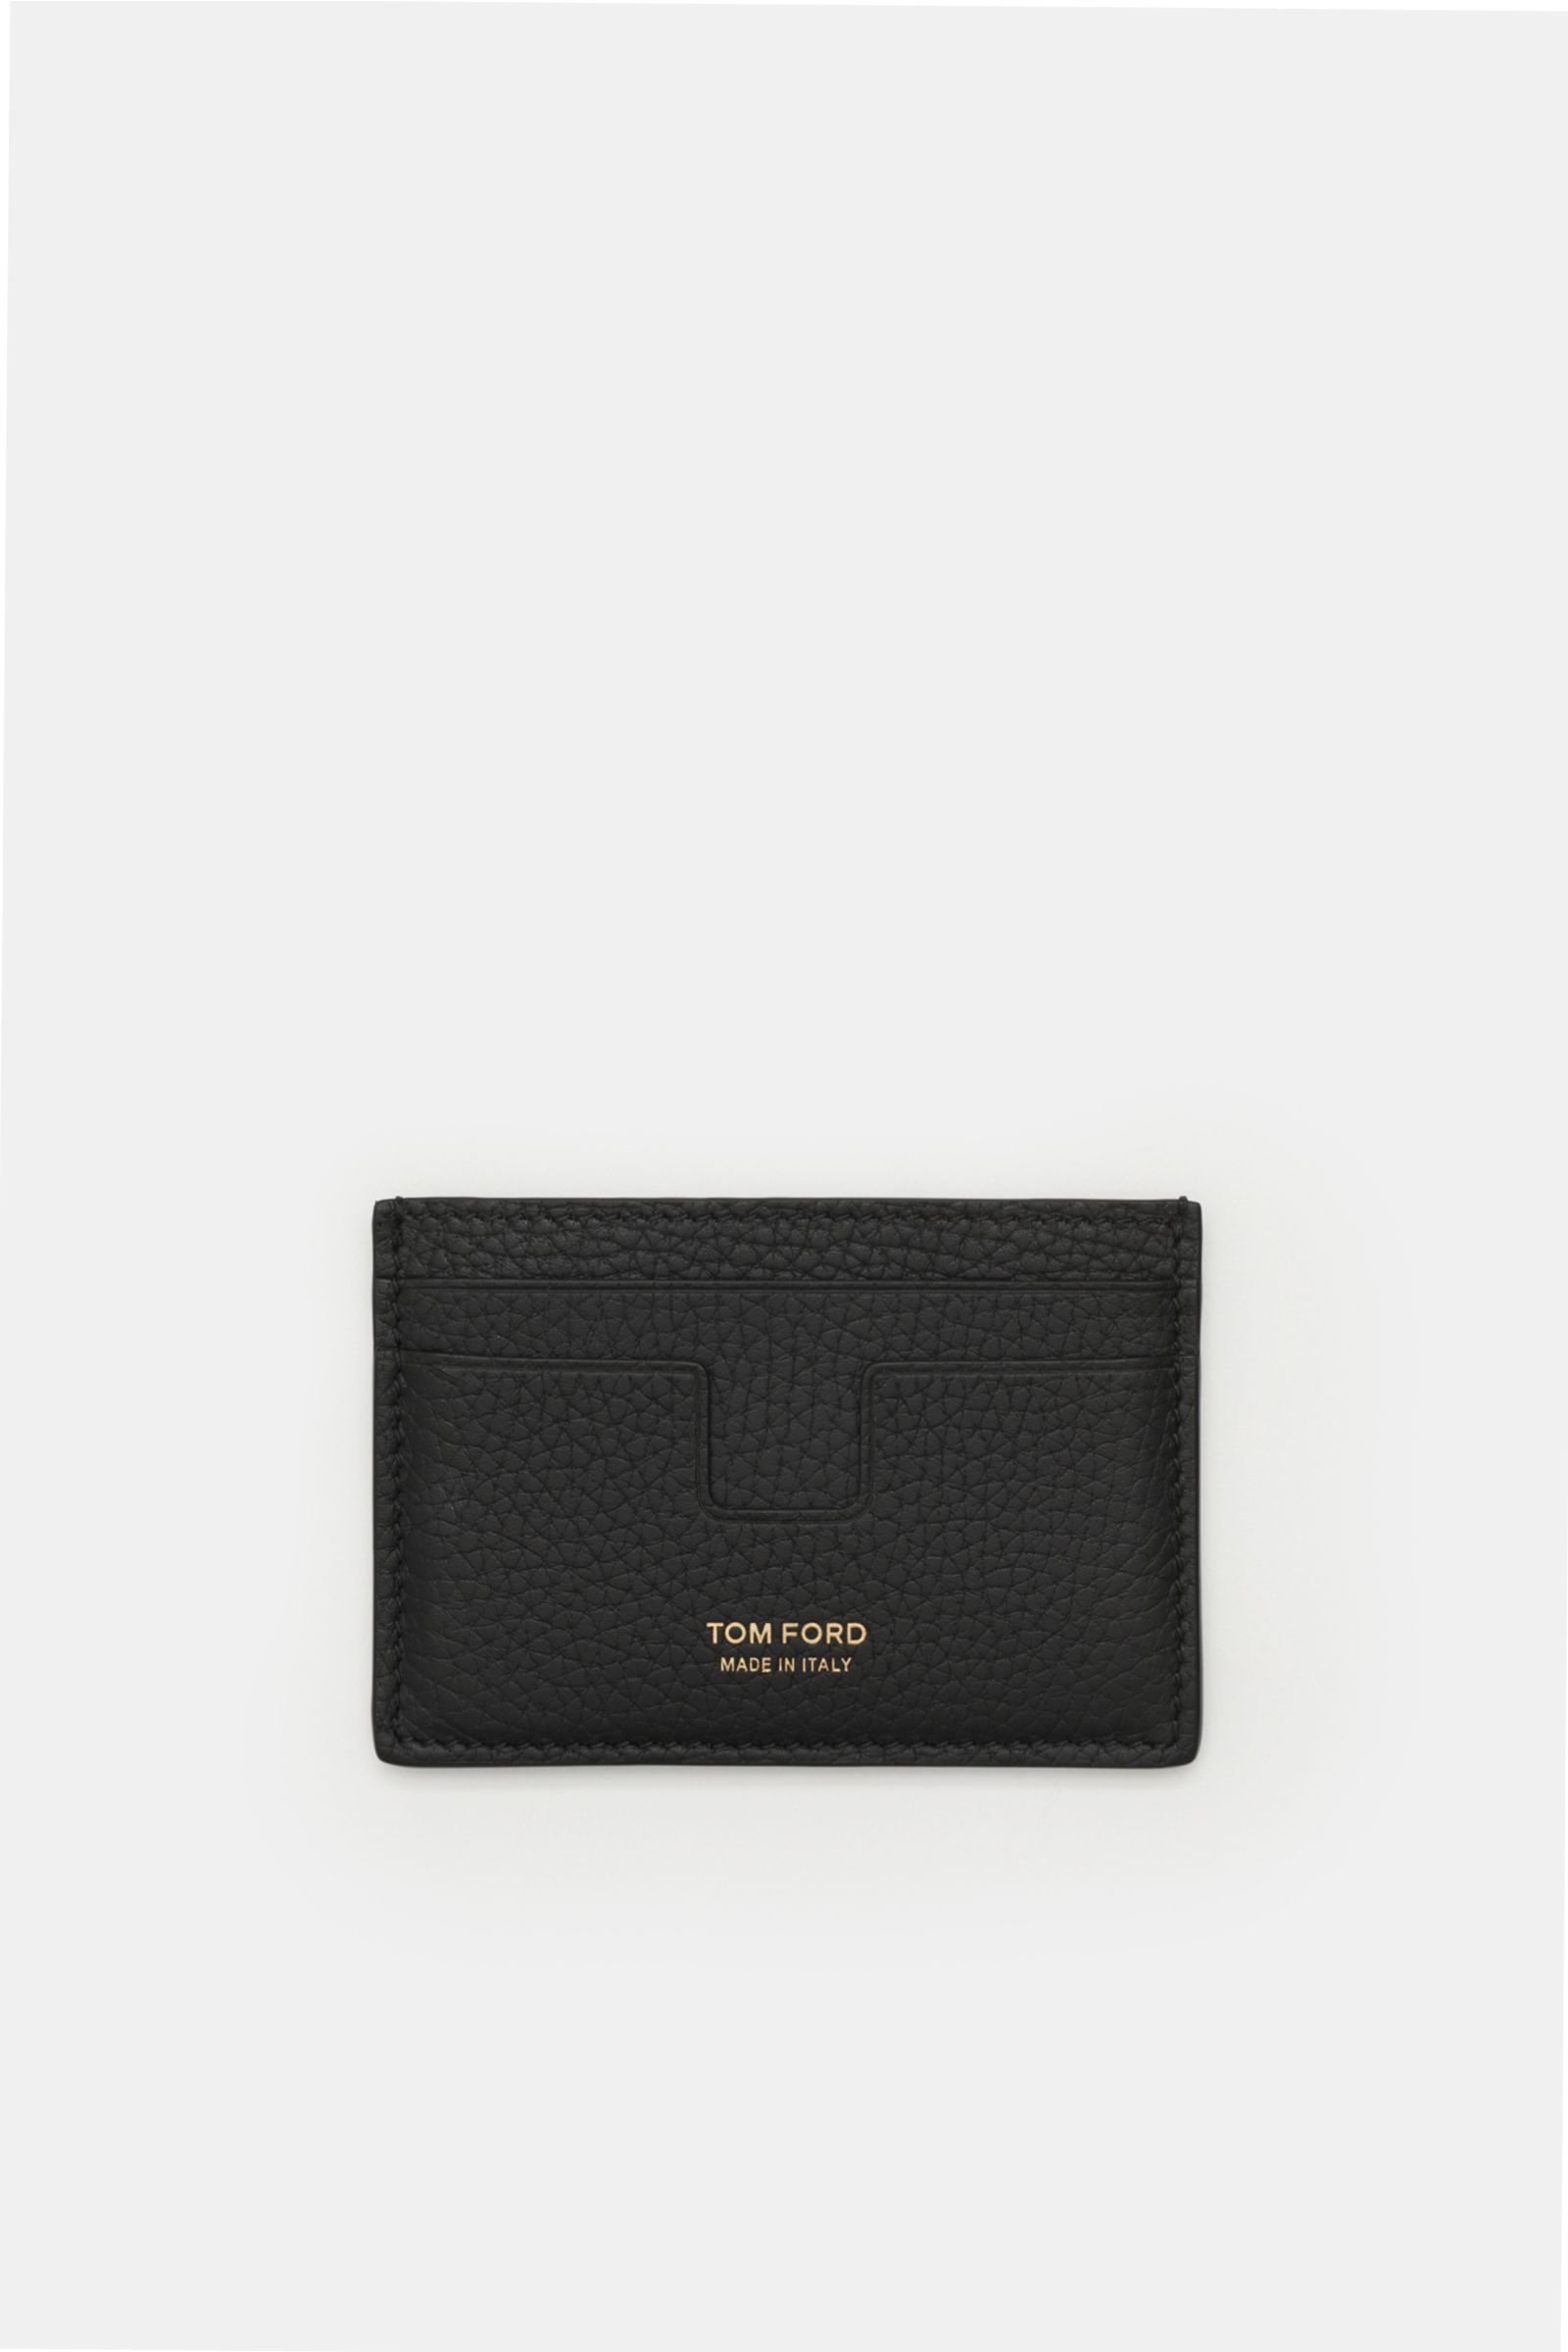 Credit card holder black